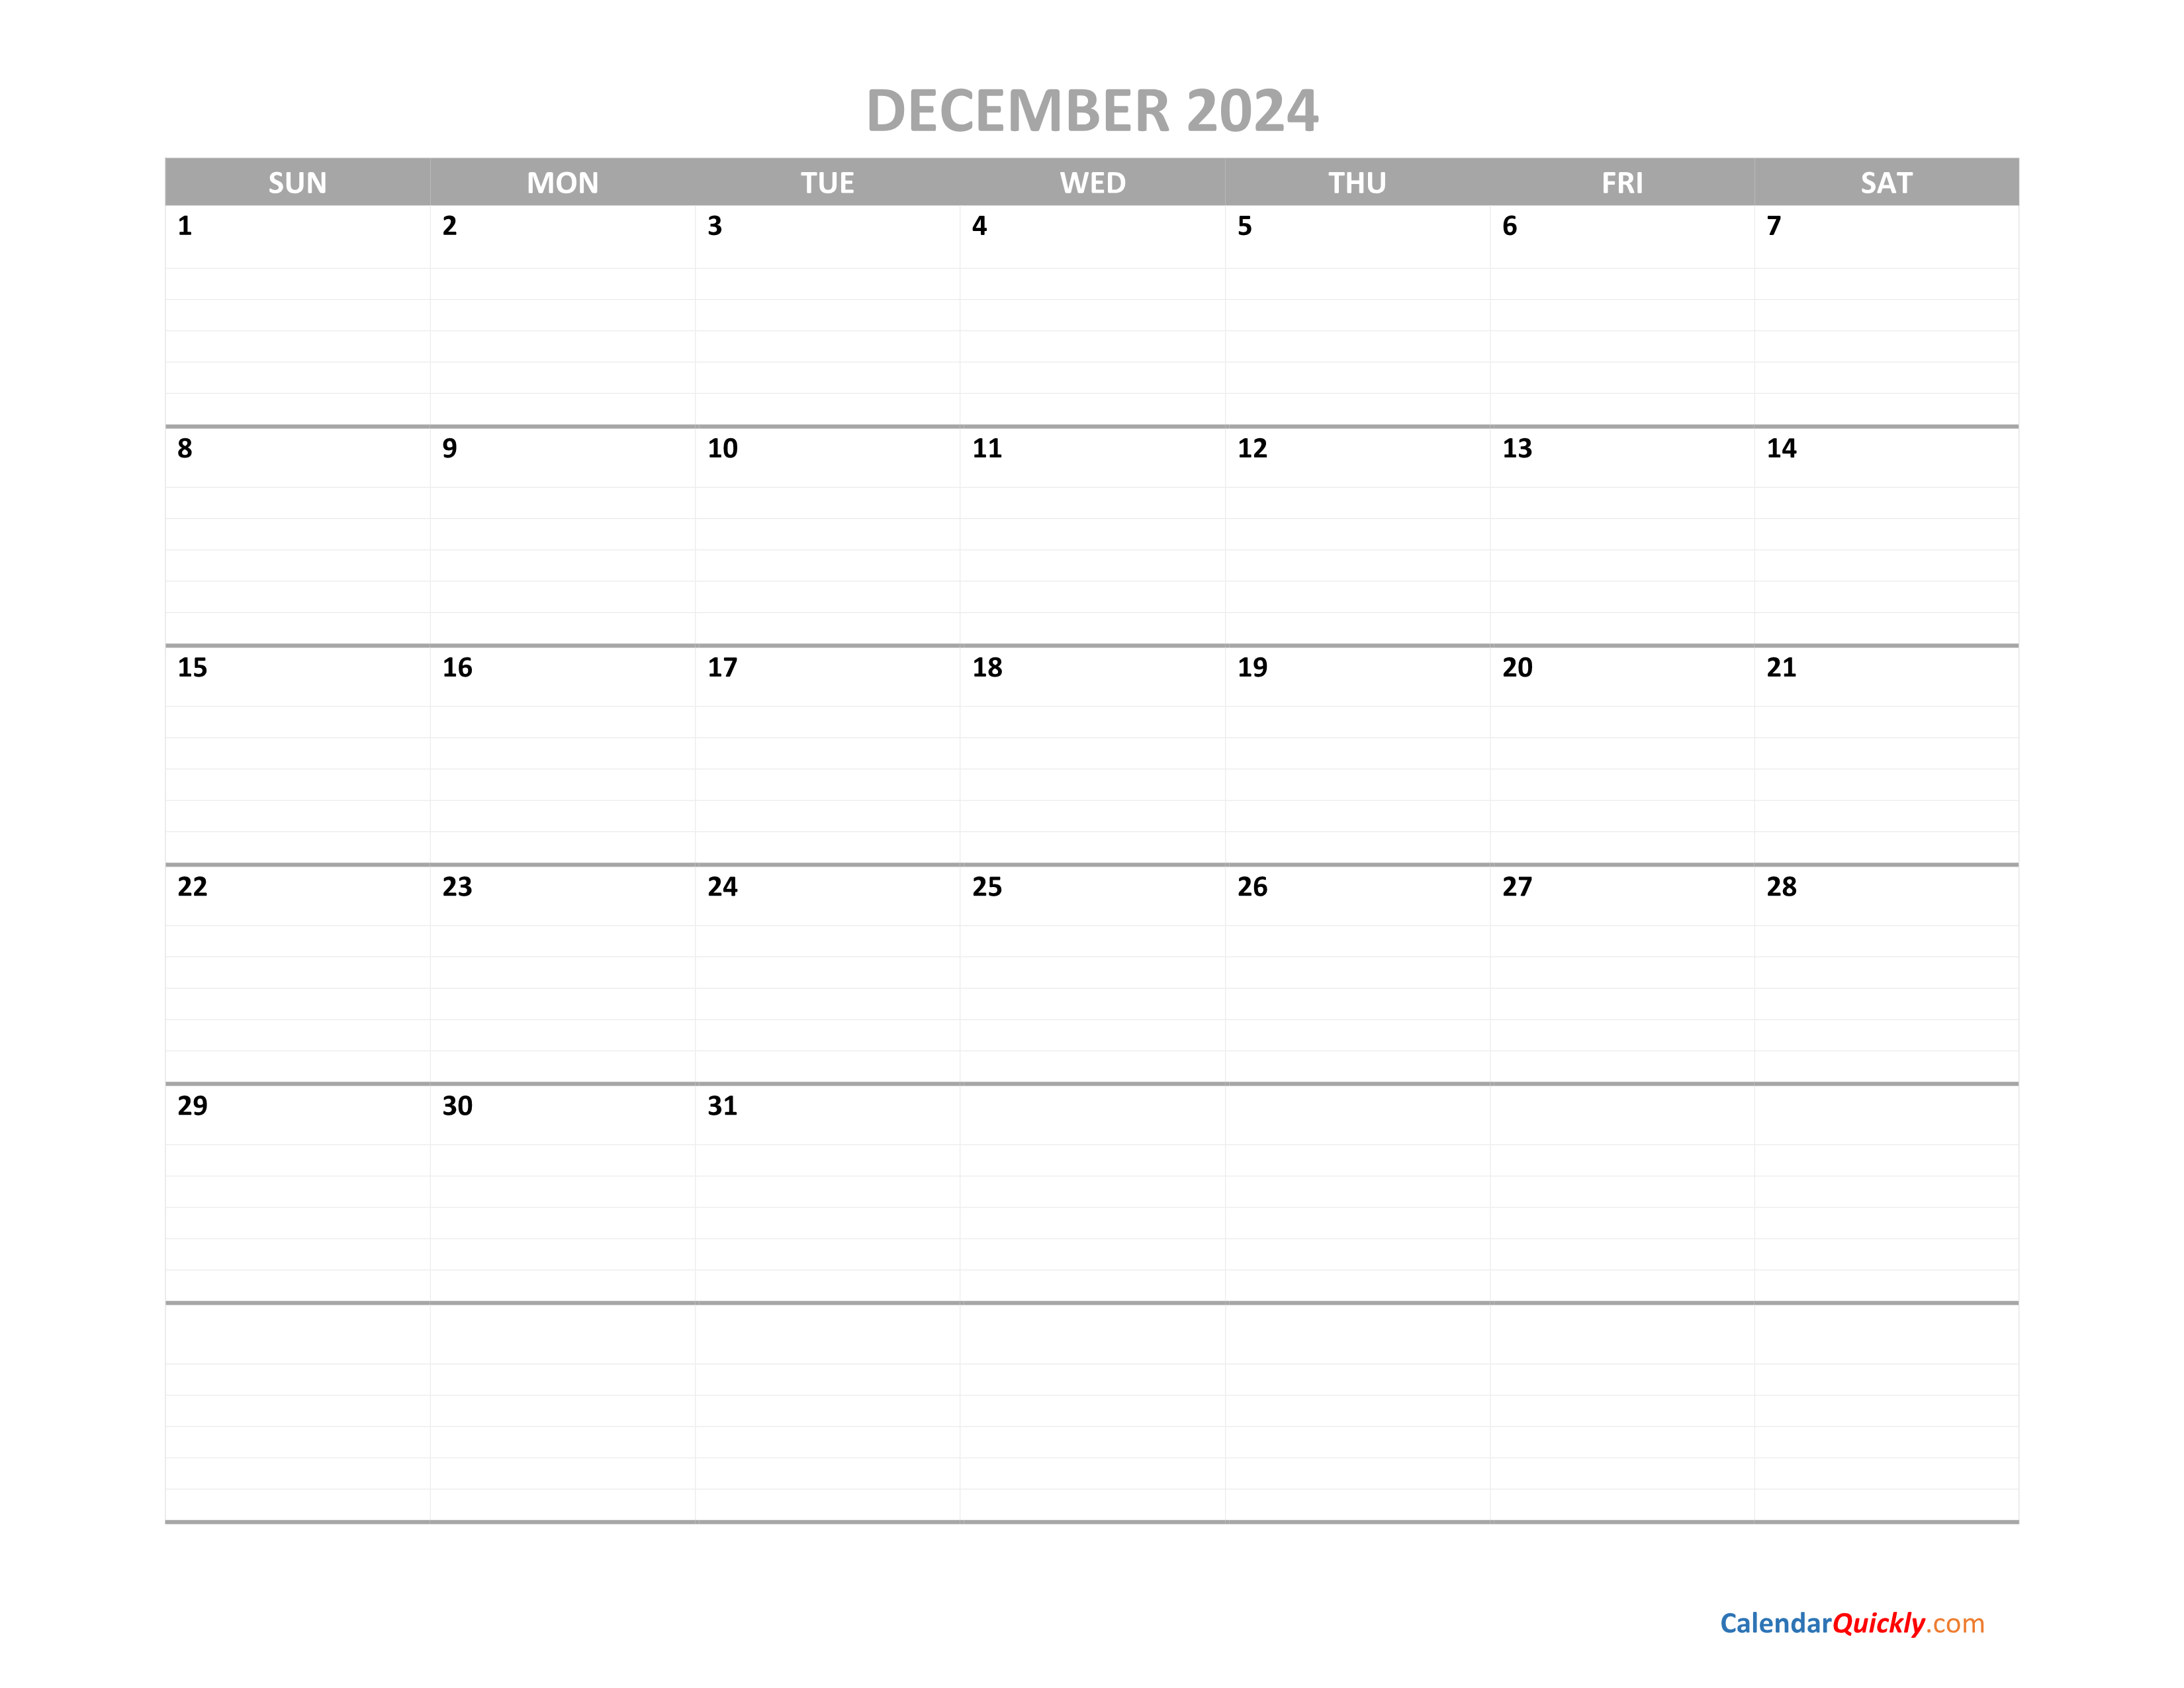 december-calendar-2024-printable-calendar-quickly